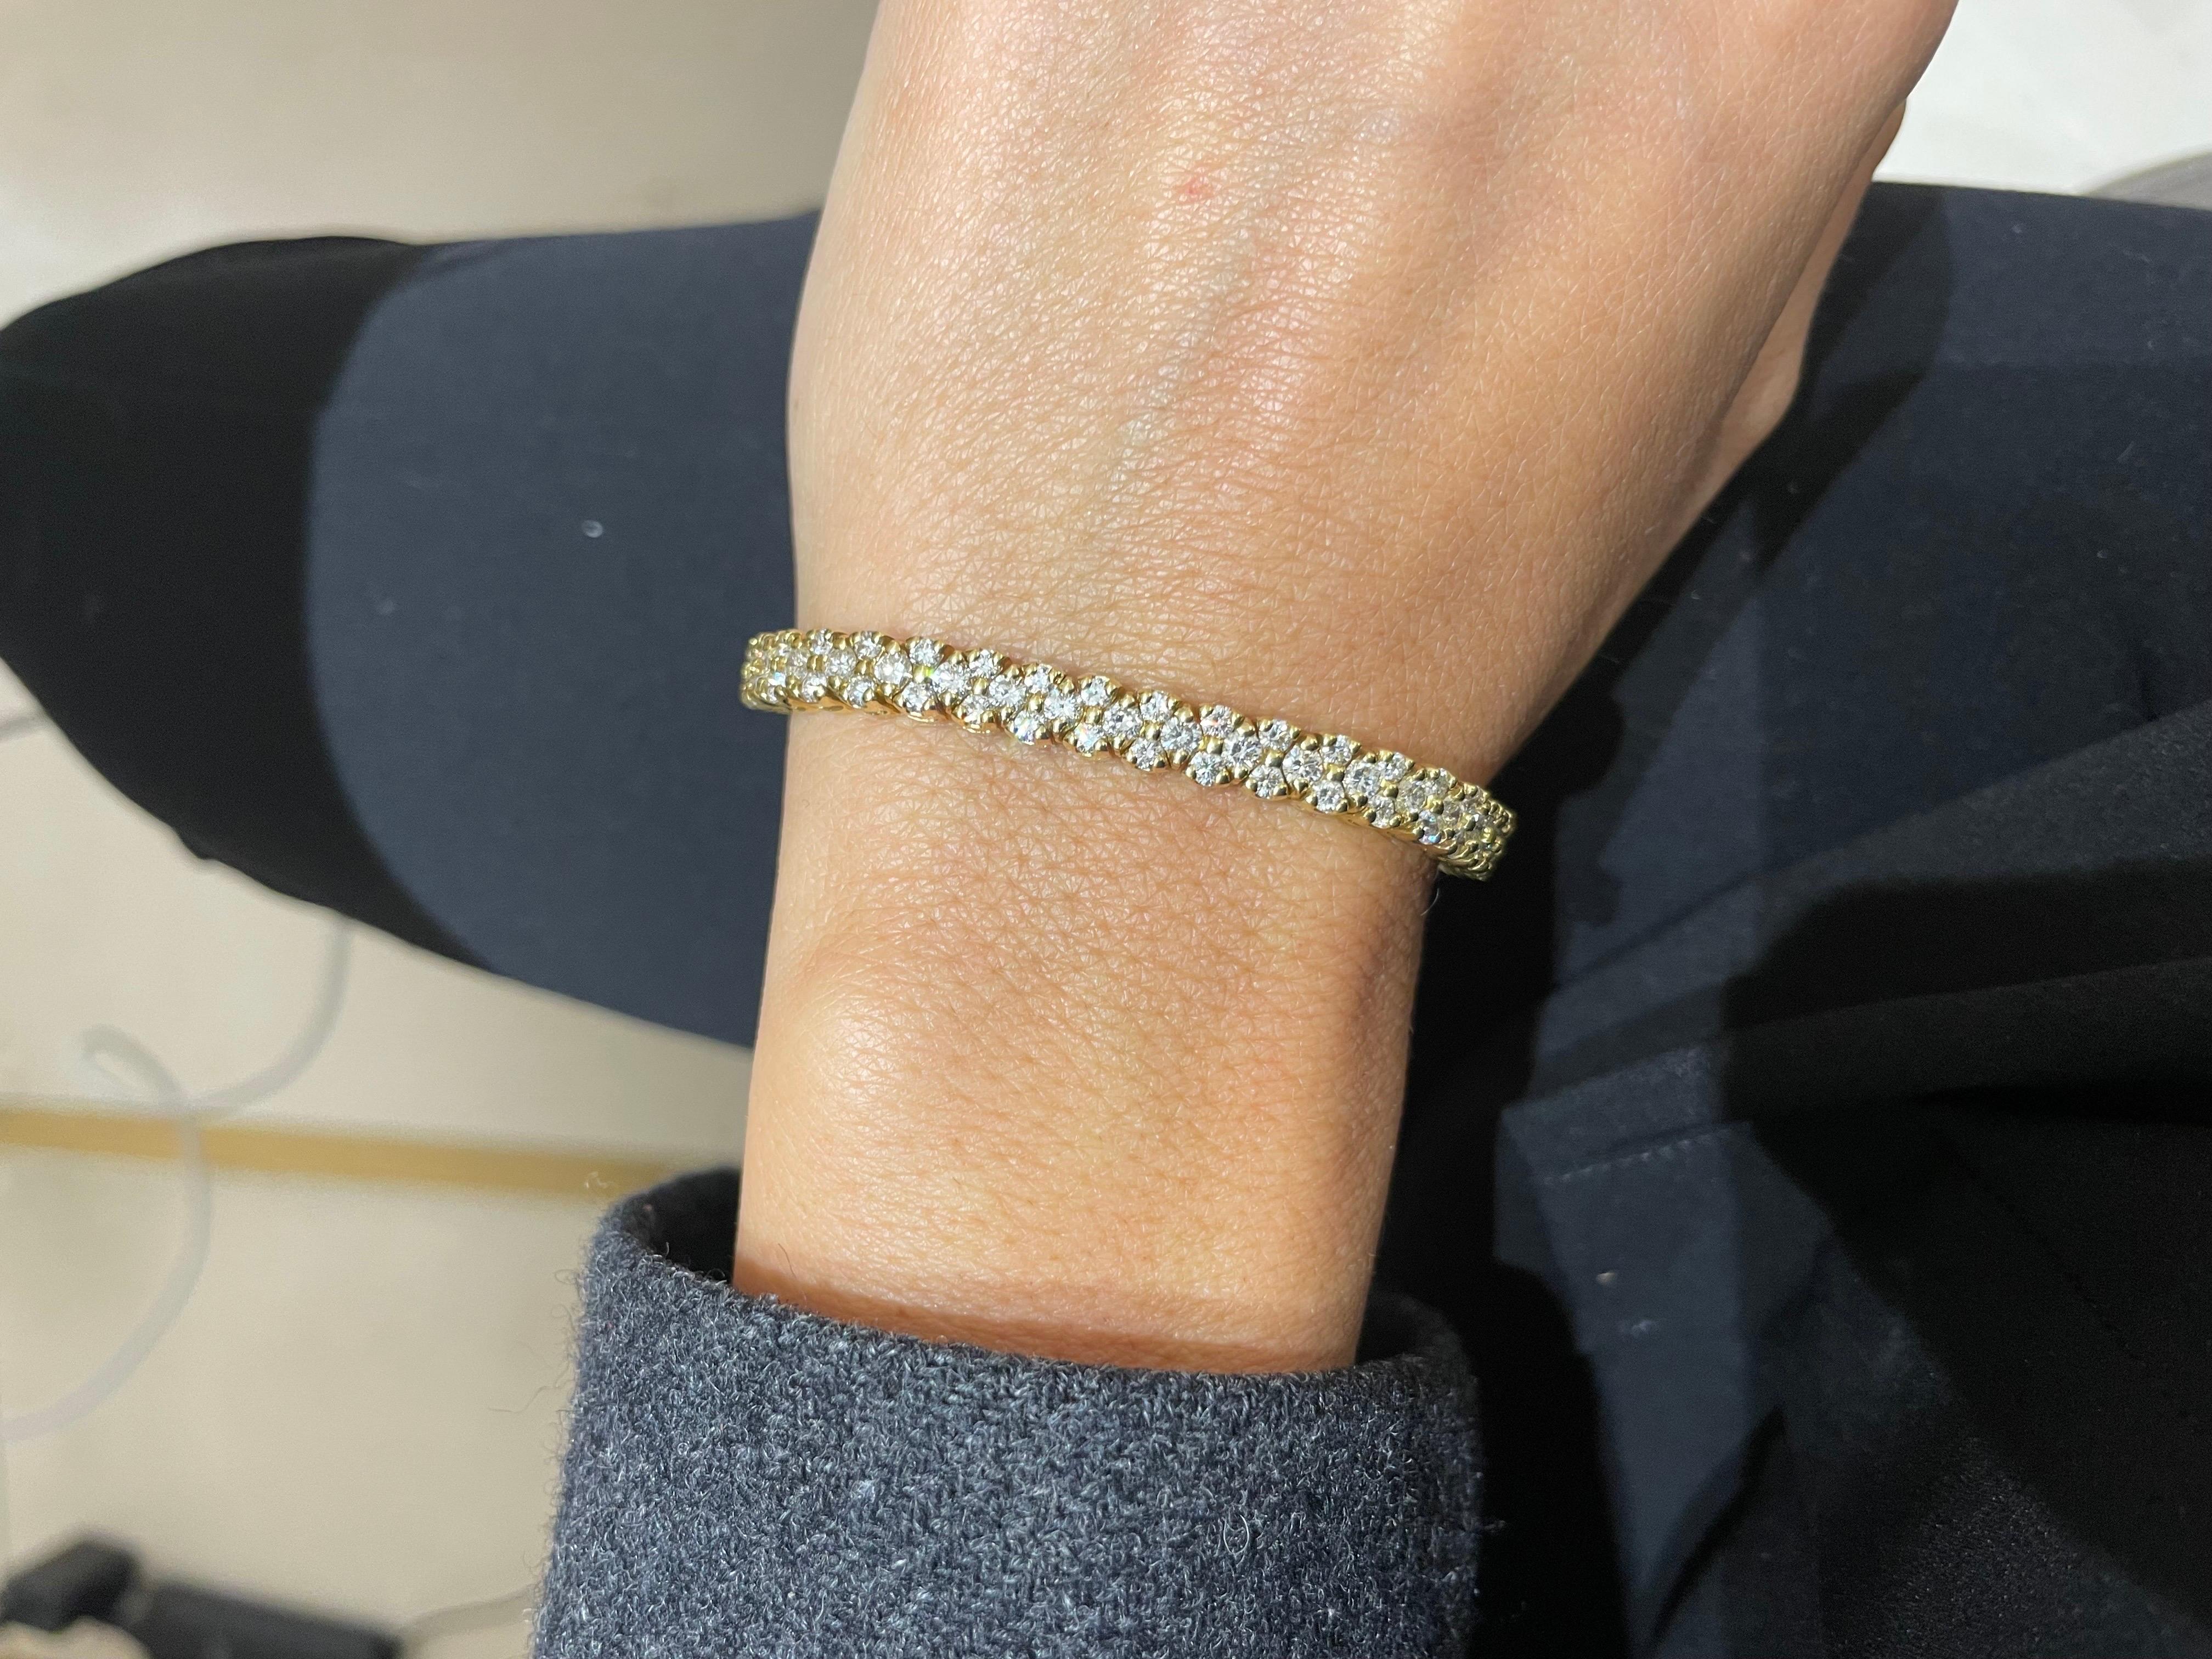 Ce superbe bracelet flexible en ligne de diamants présente 6,60 carats de diamants blancs brillants sertis dans de l'or jaune 18 carats, la façon idéale d'orner n'importe quel poignet. 
Le bracelet mesure 7